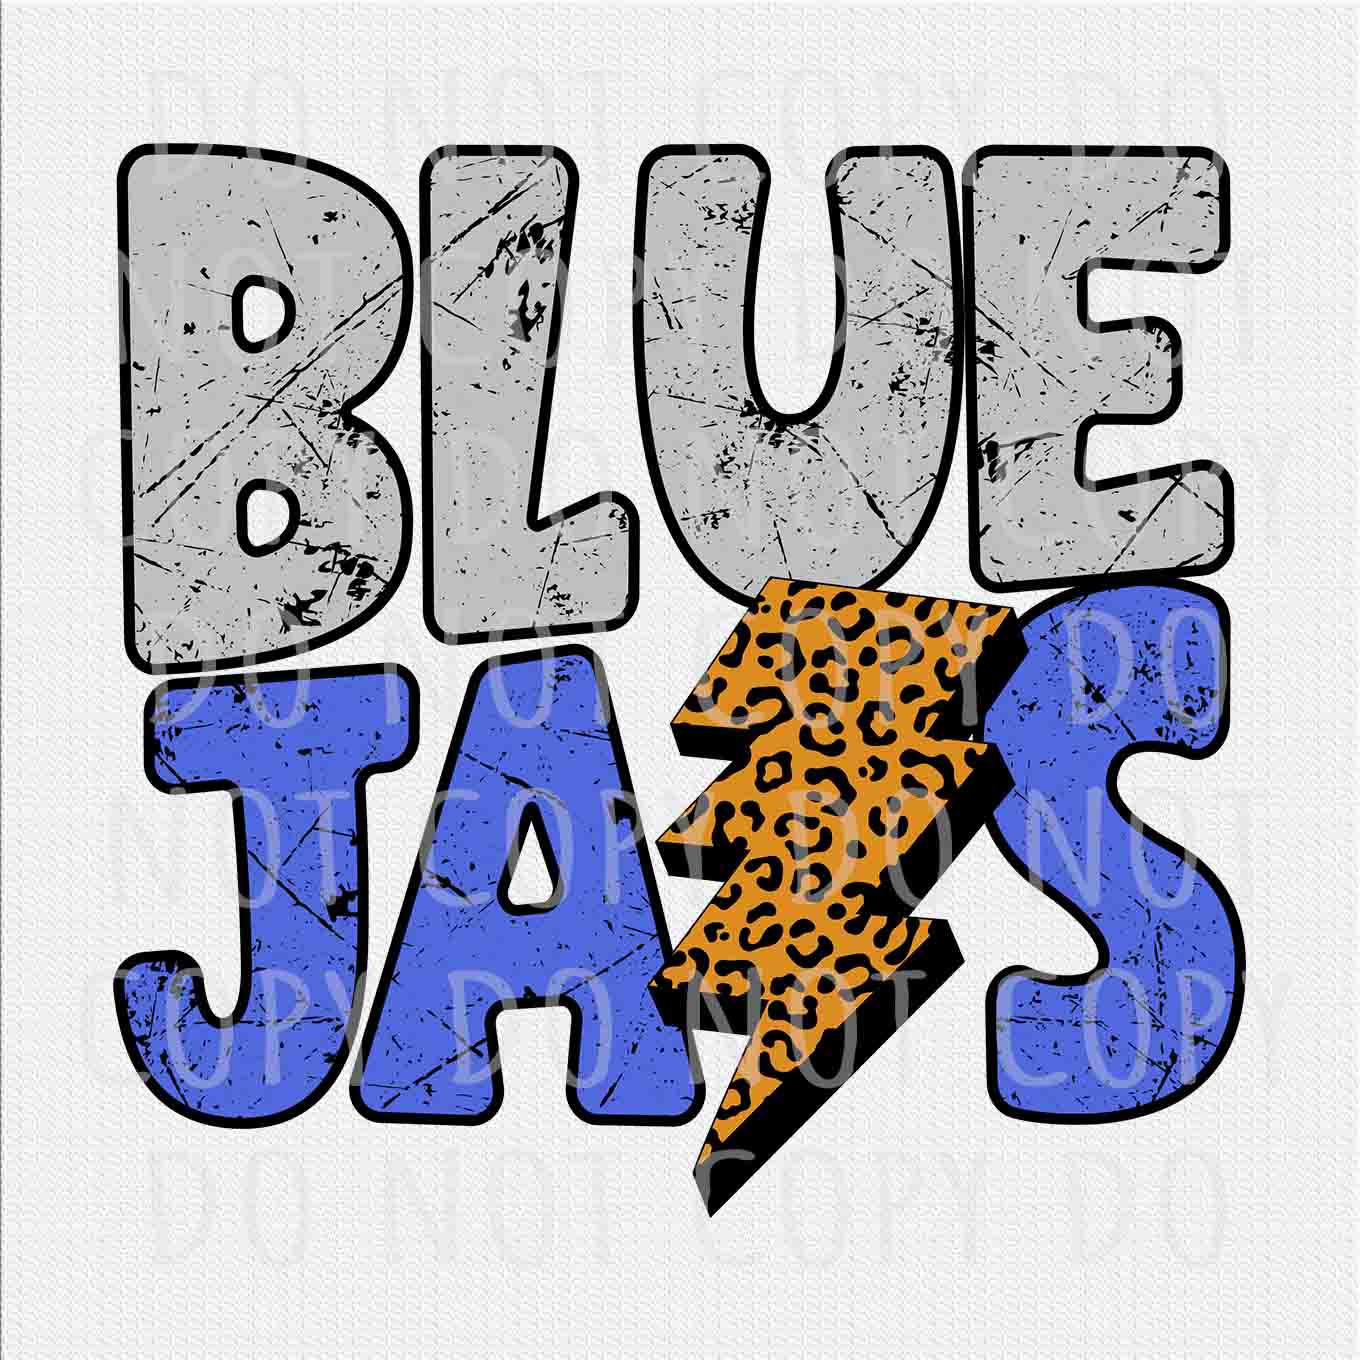 Blue Jays png, Blue Jays Colorful Leopard Lightning Bolt design png, Digital download